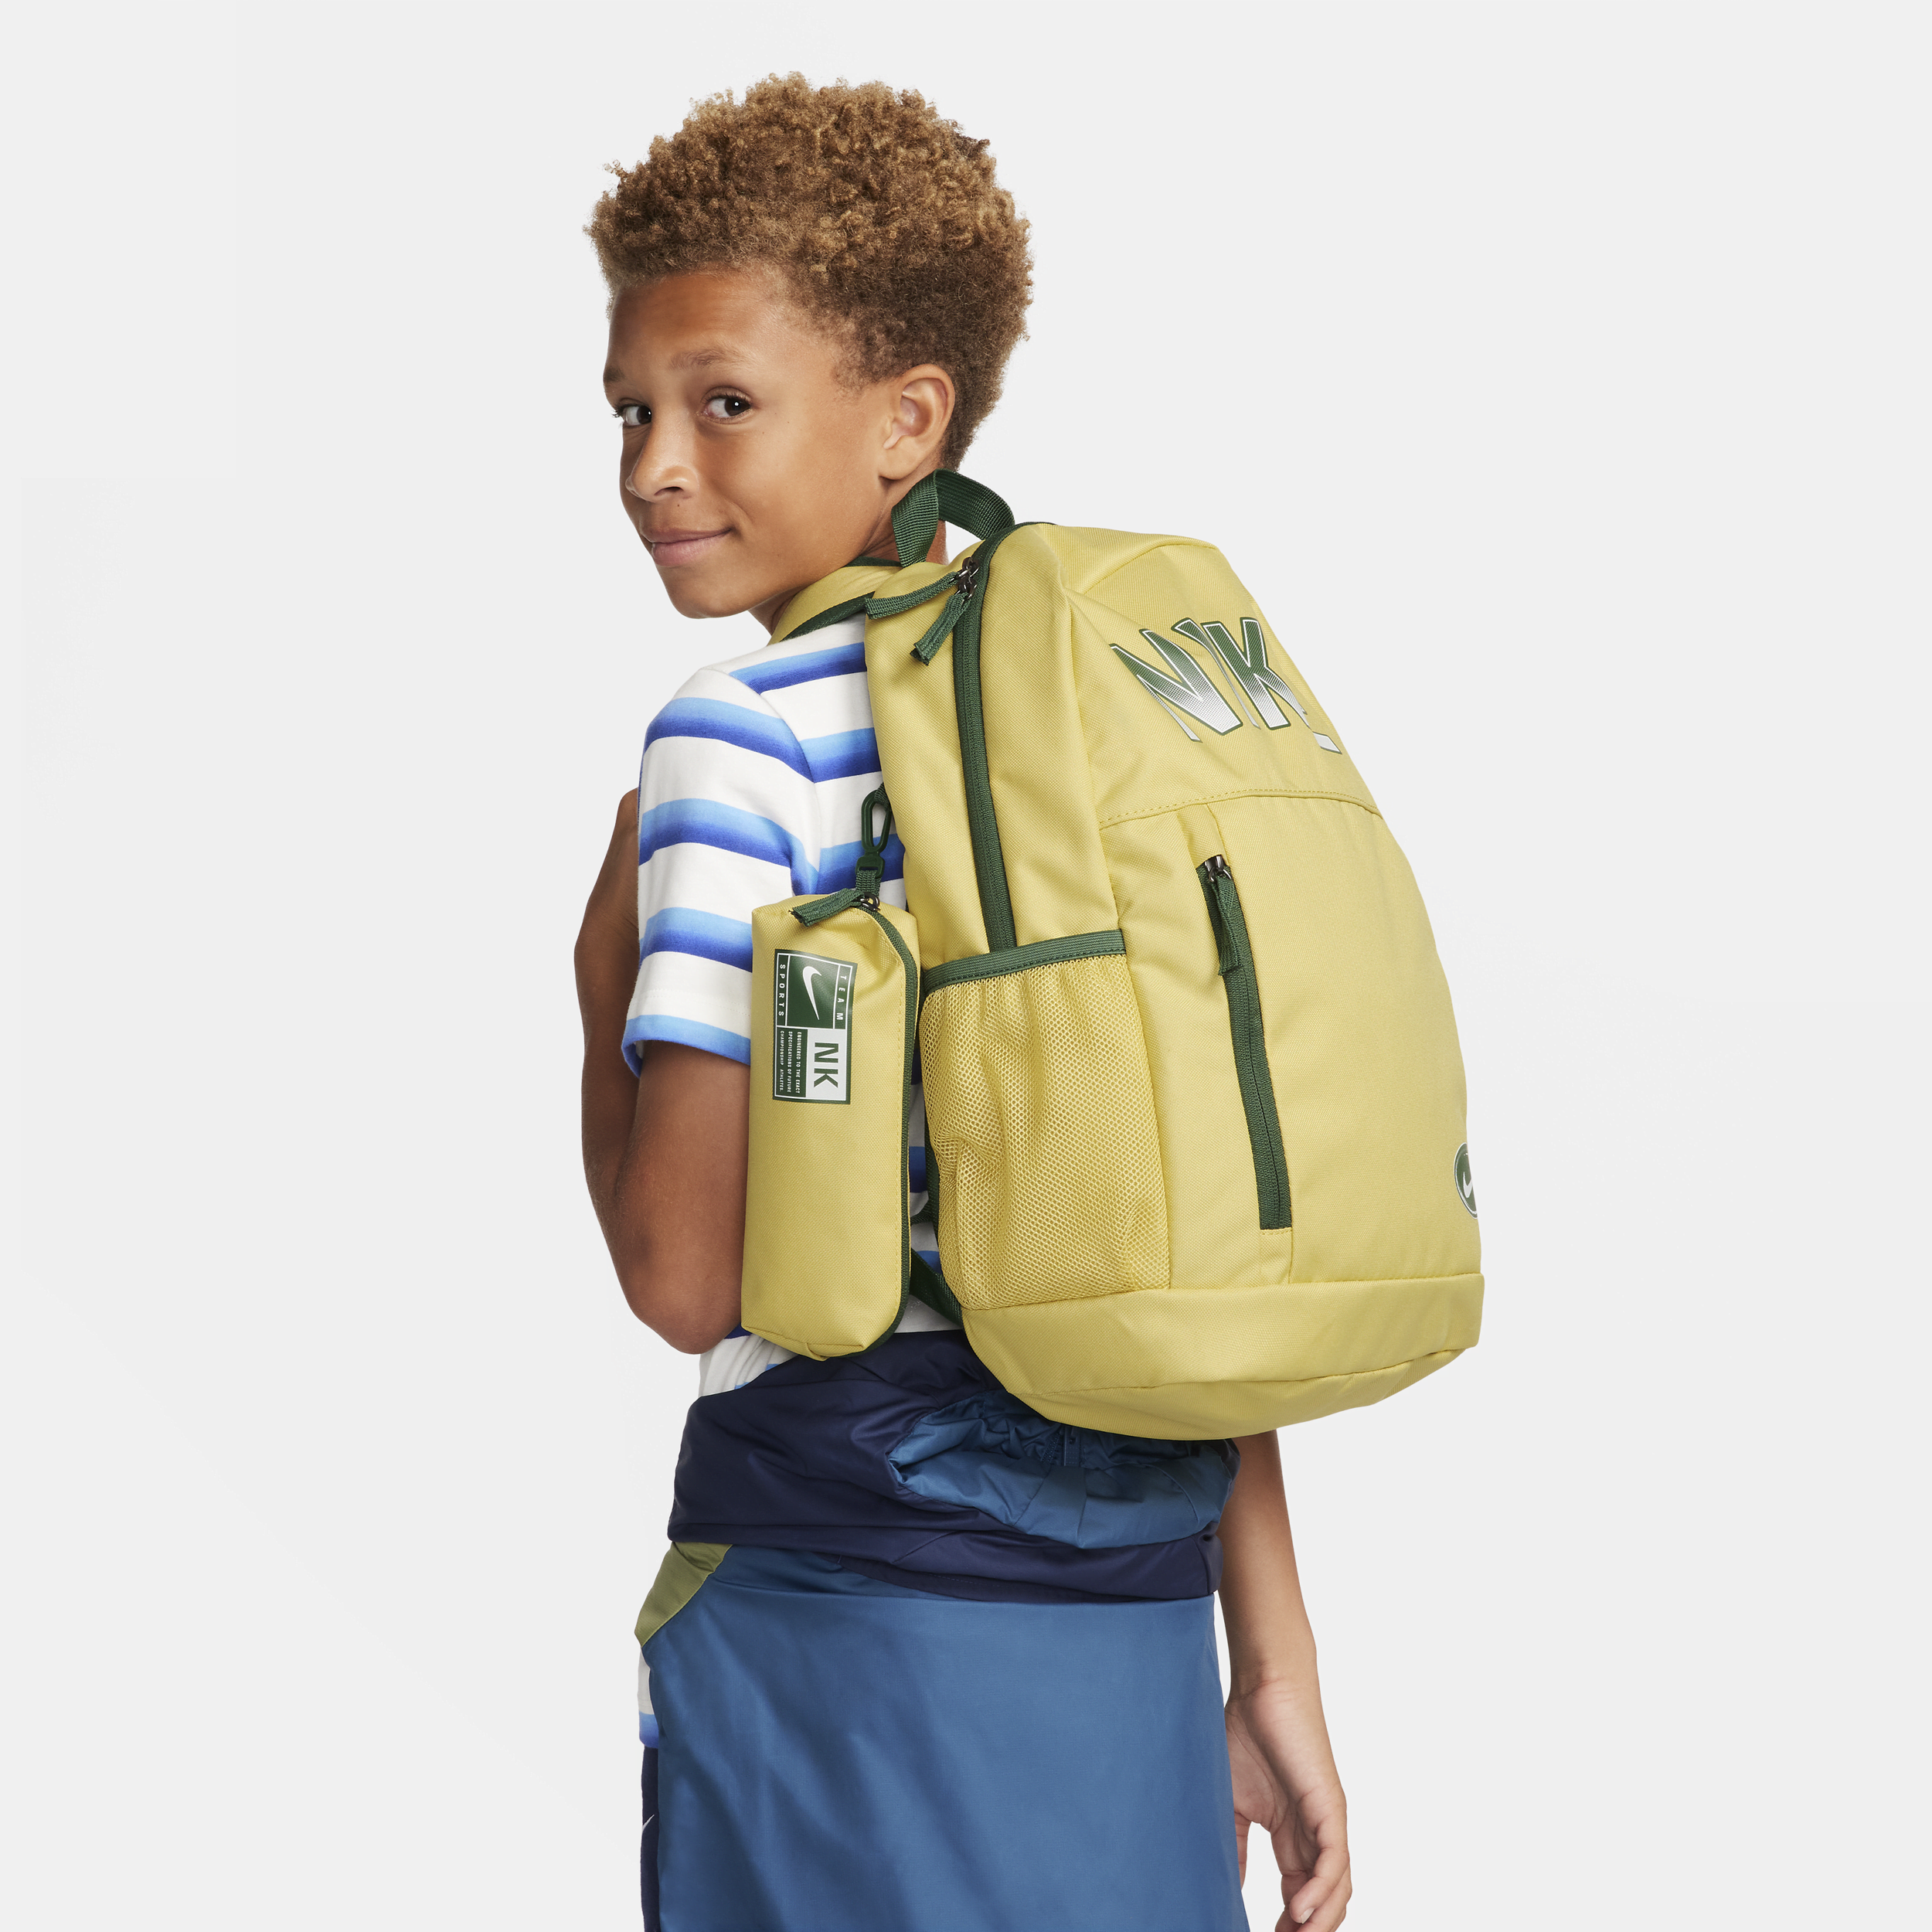 Nike-rygsæk til børn (20 liter) - gul